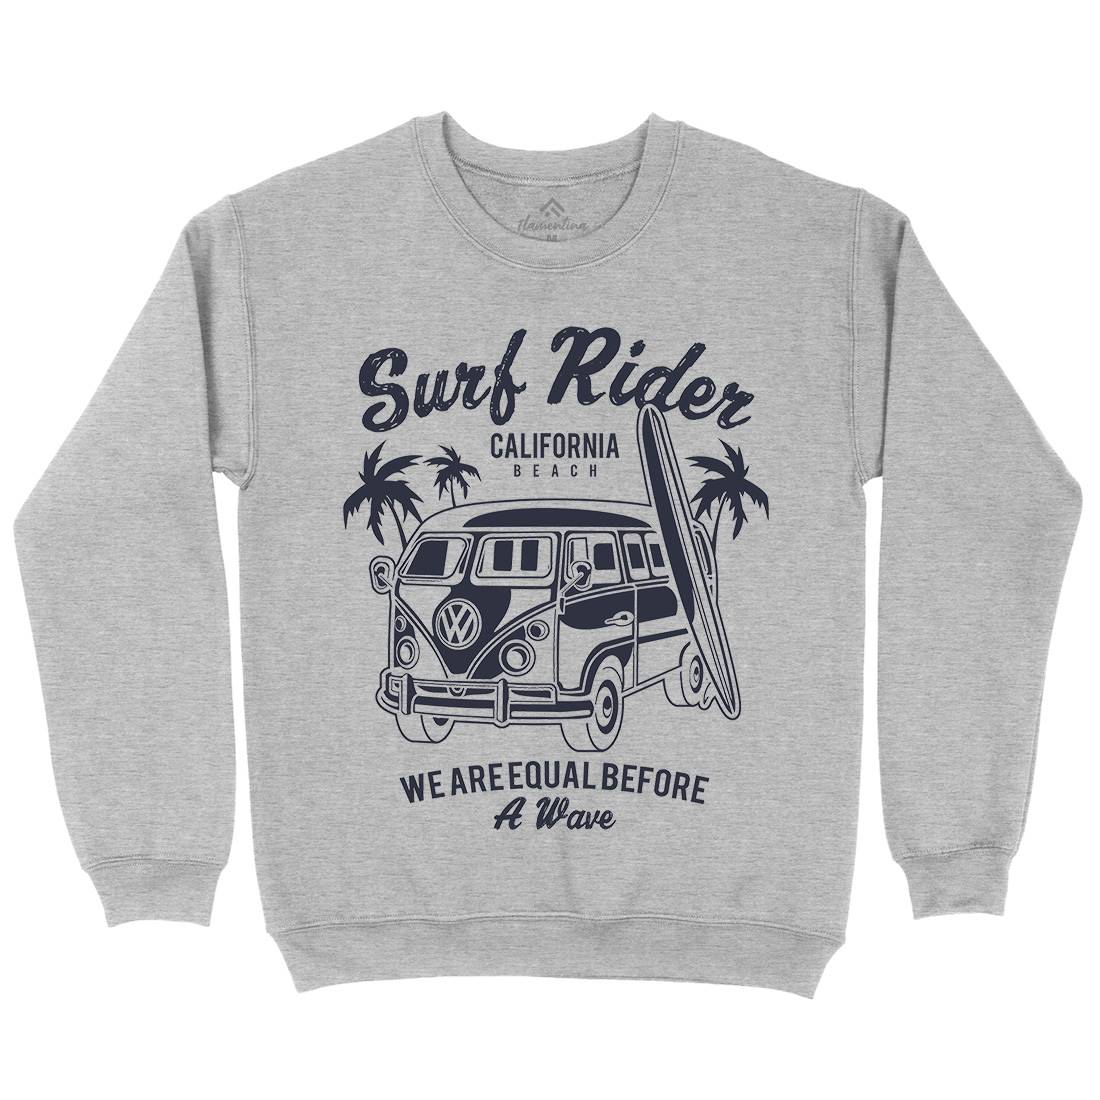 Rider Kids Crew Neck Sweatshirt Surf A169